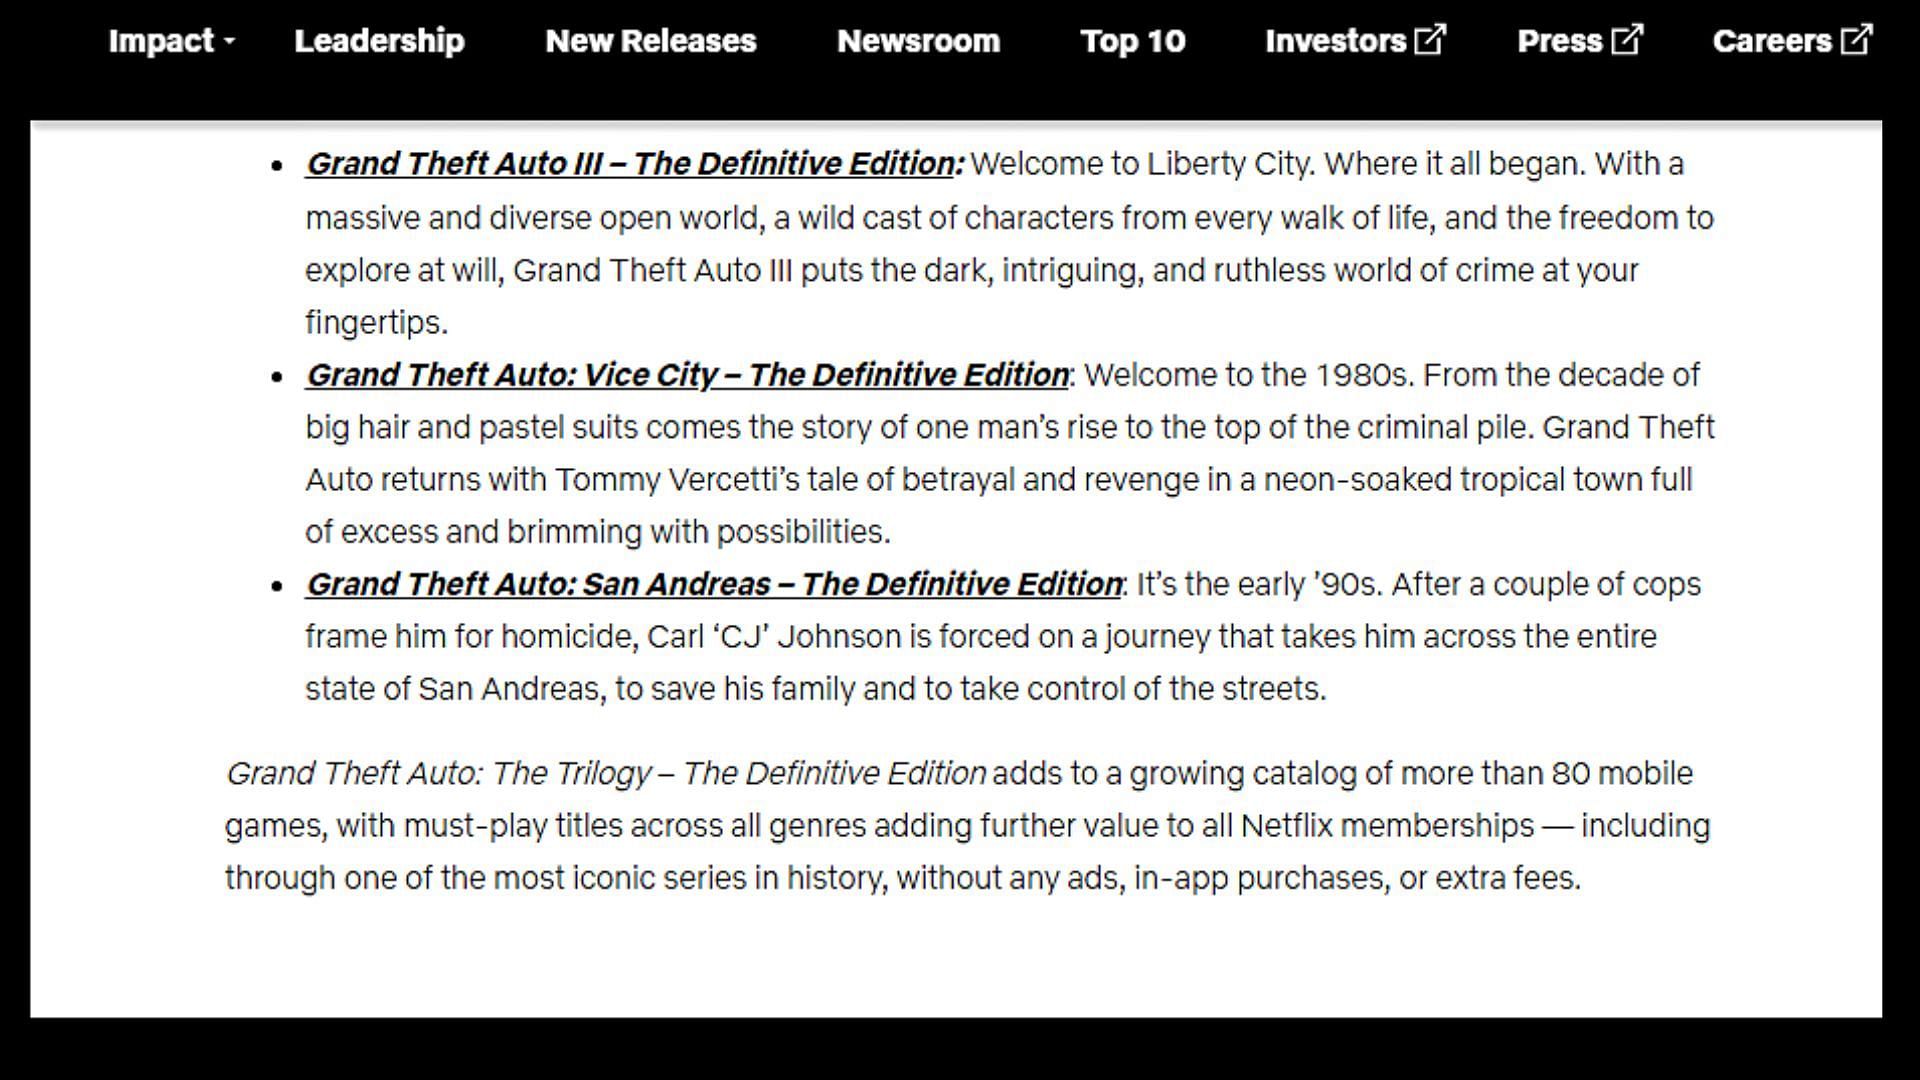 More details about the Grand Theft Auto Trilogy on Netflix (Image via about.netflix.com)